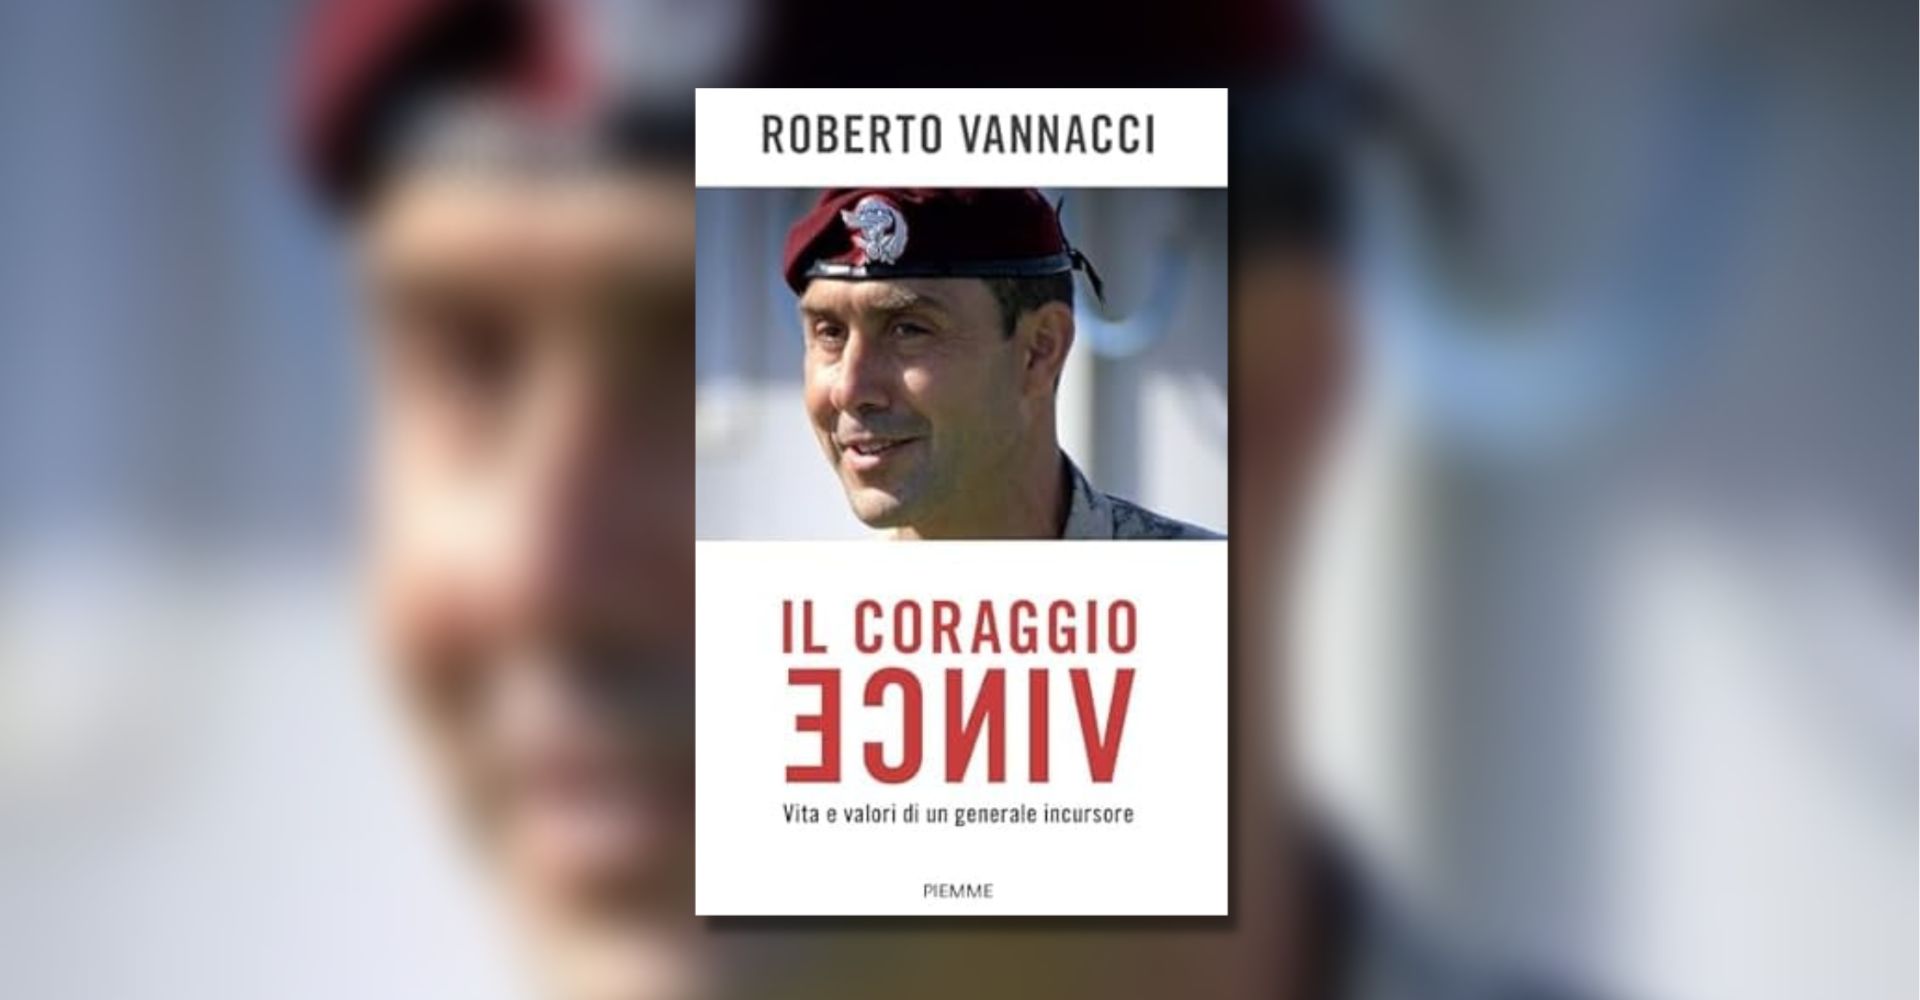 Dopo le smentite, la conferma: in arrivo il nuovo libro del generale  Vannacci, Il coraggio vince 